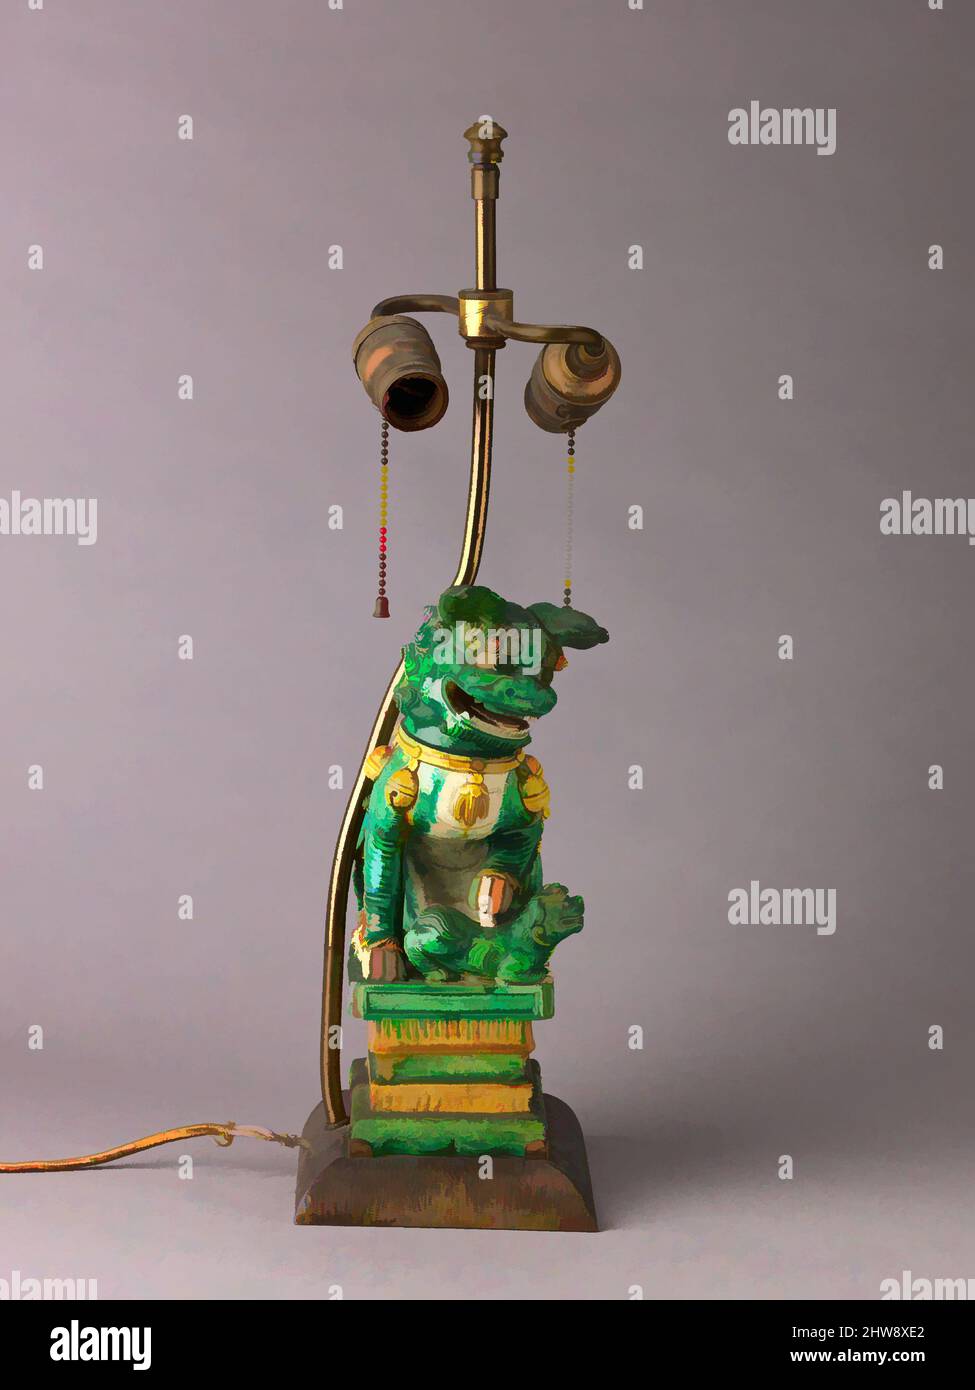 Art inspiré par la figure du lion monté comme lampe, probablement 19th  siècle, chinois, porcelaine avec glaçures colorées., hauteur: 26,6 cm.,  céramique, ce lion bouddhiste monté comme lampe forme une paire avec